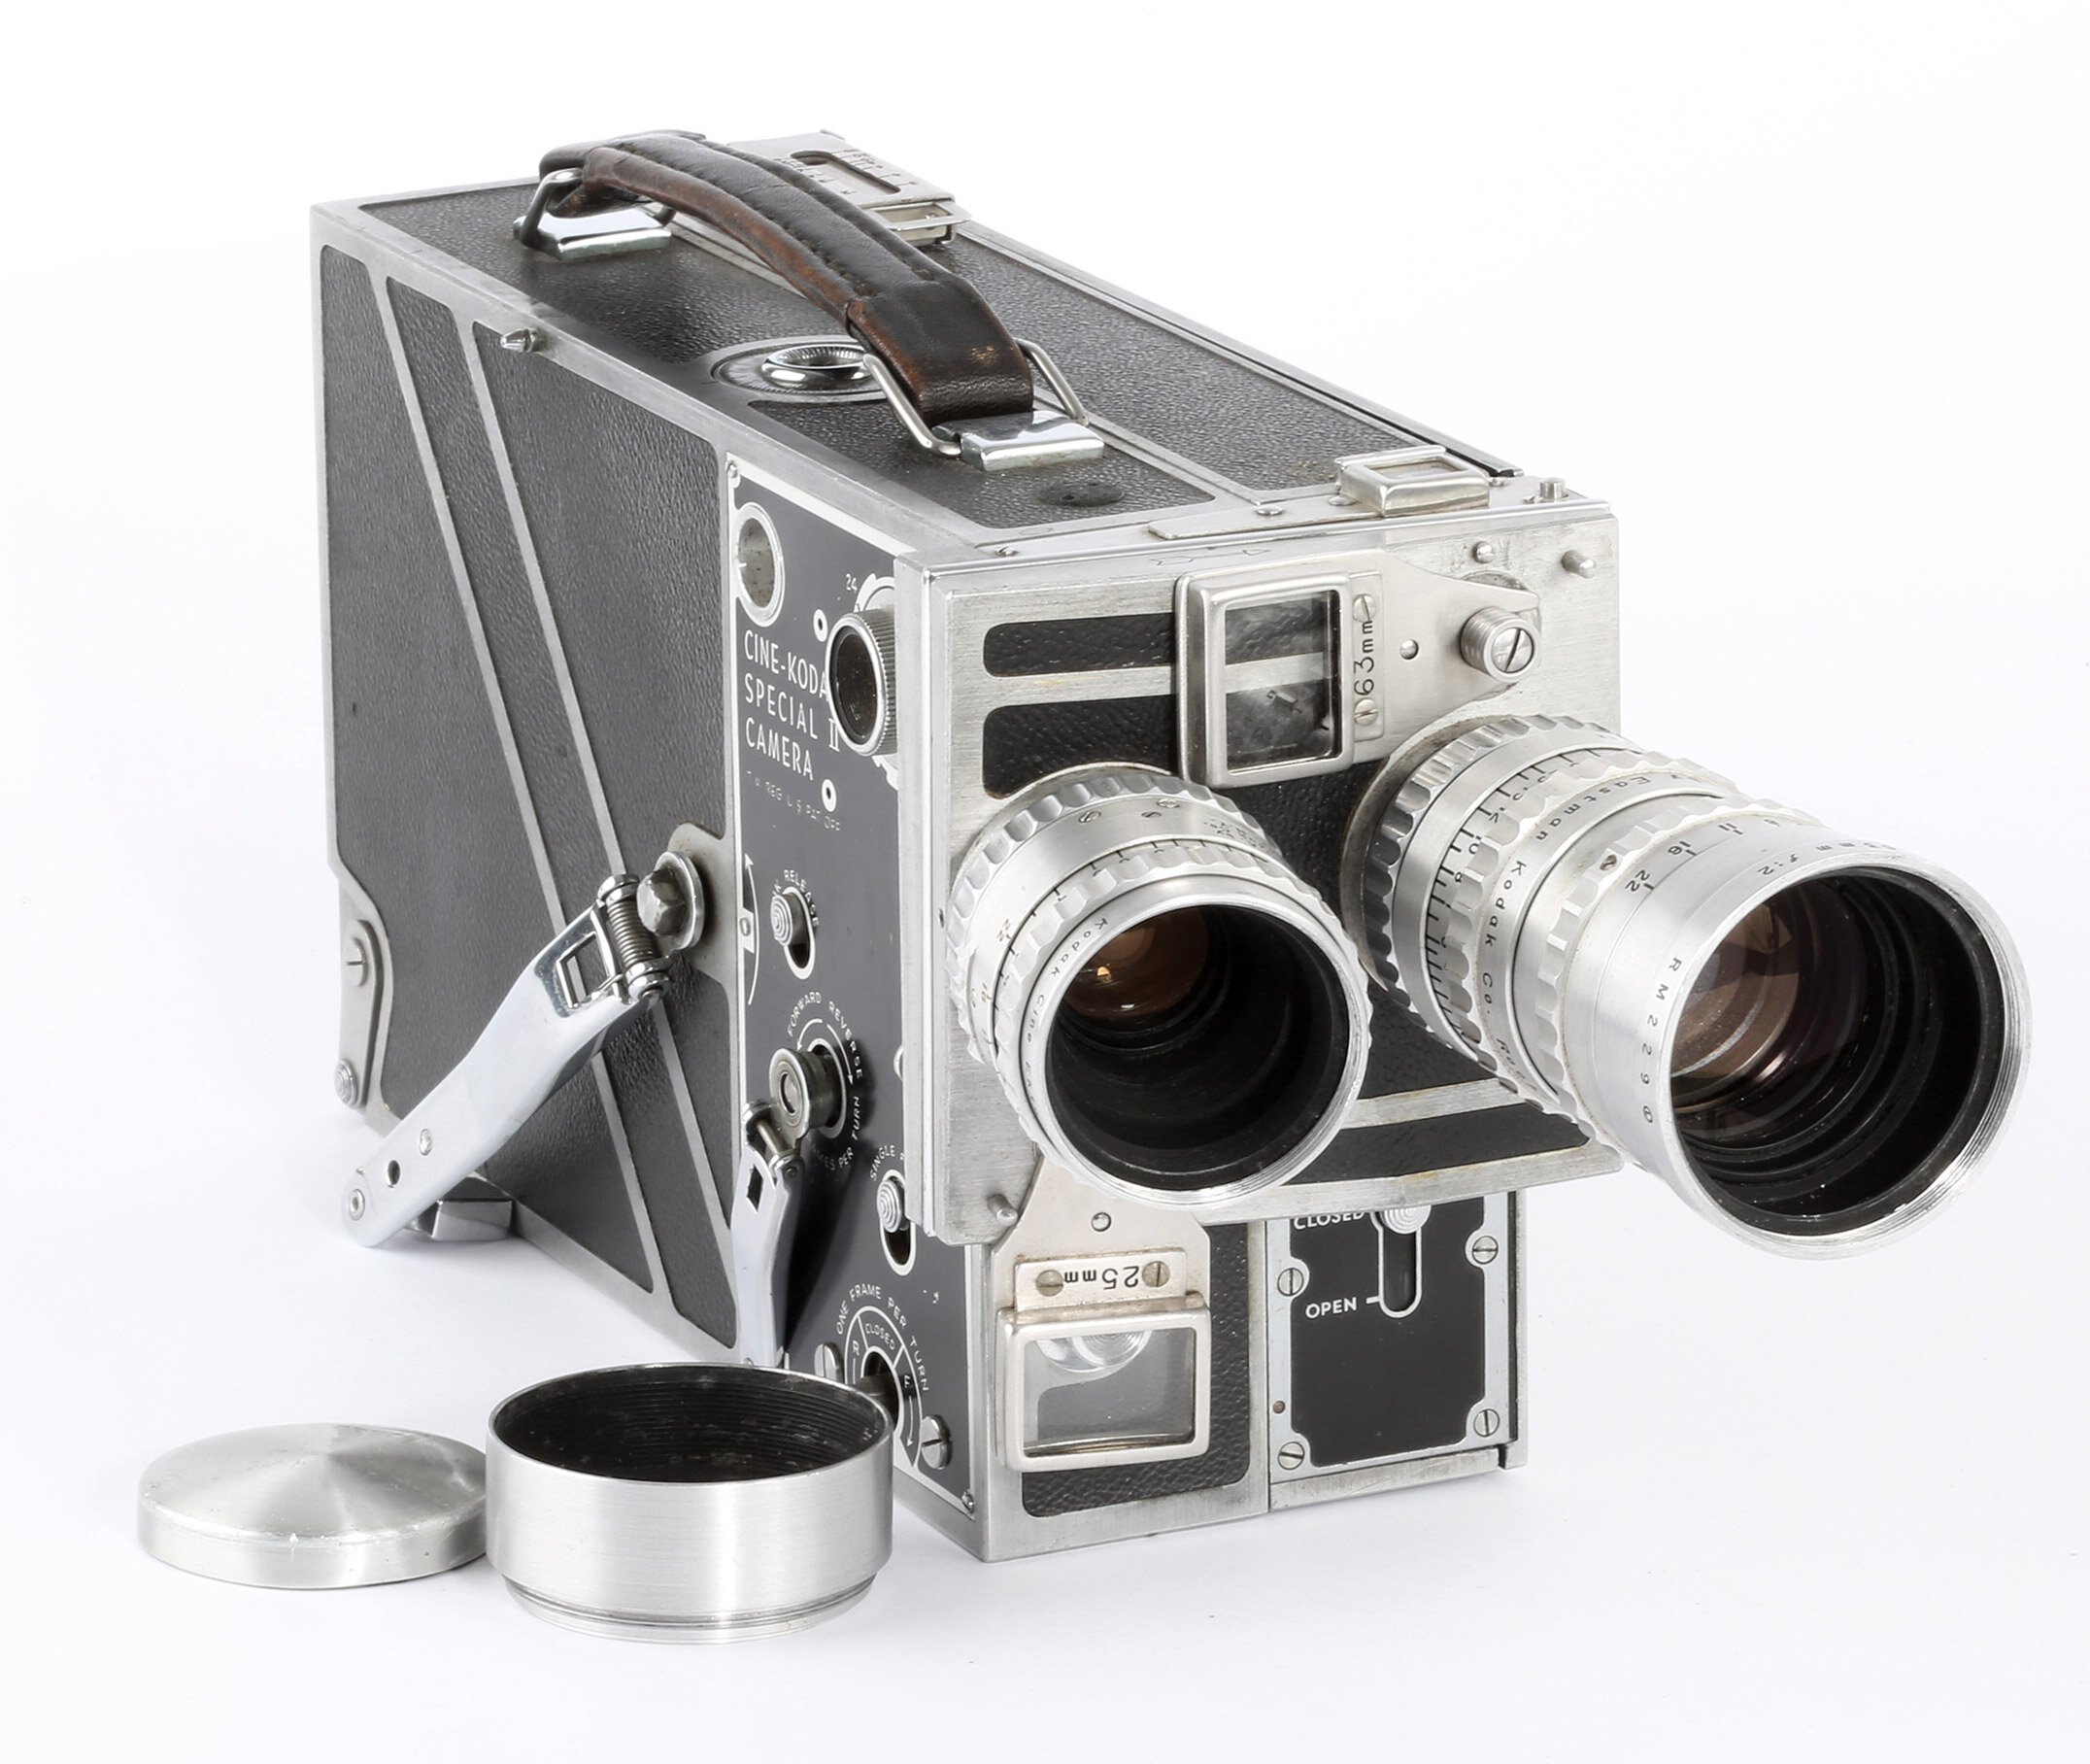 Cine - Kodak Special II camera + ektar 63mm f2 + ektar 25mm f1.4